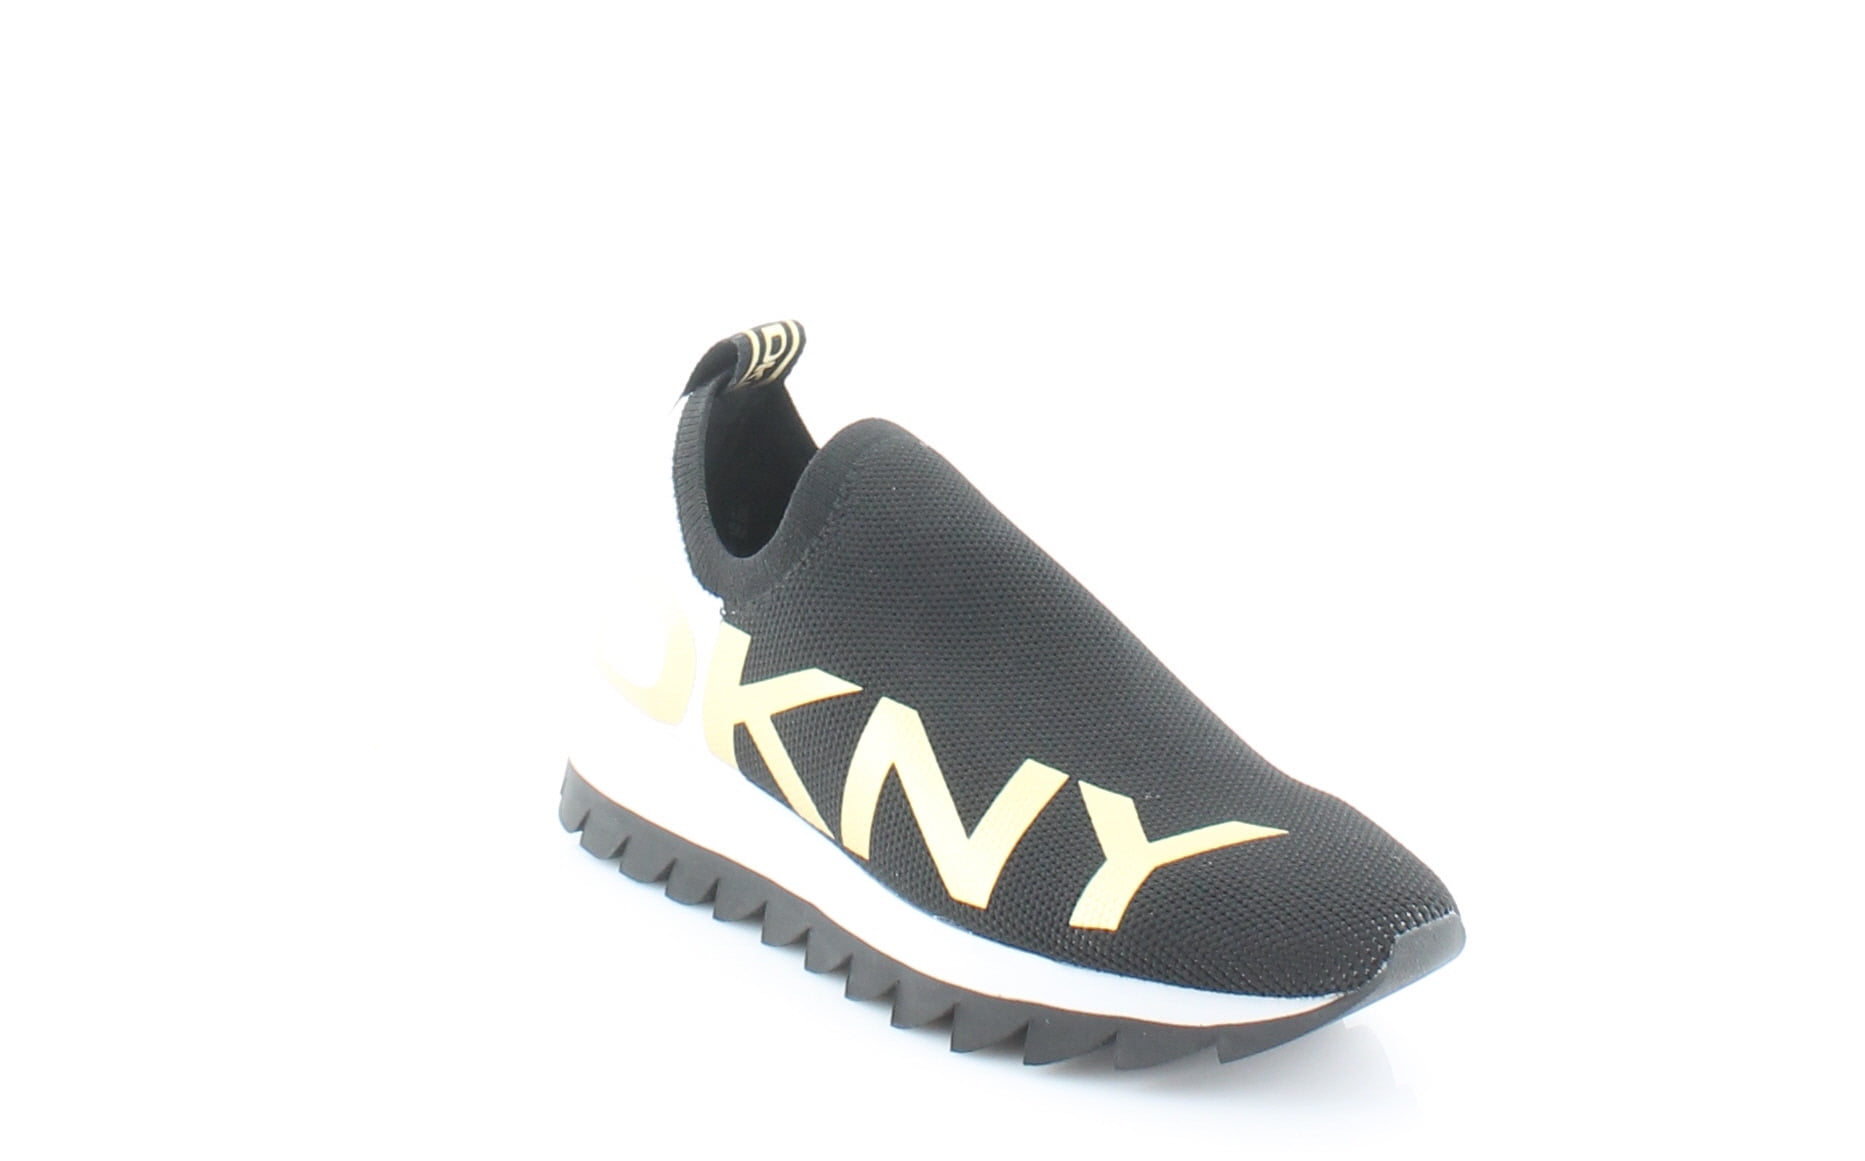 DKNY Azer Slip On Runner Women's Athletic Black/White Size 9.5 M ...